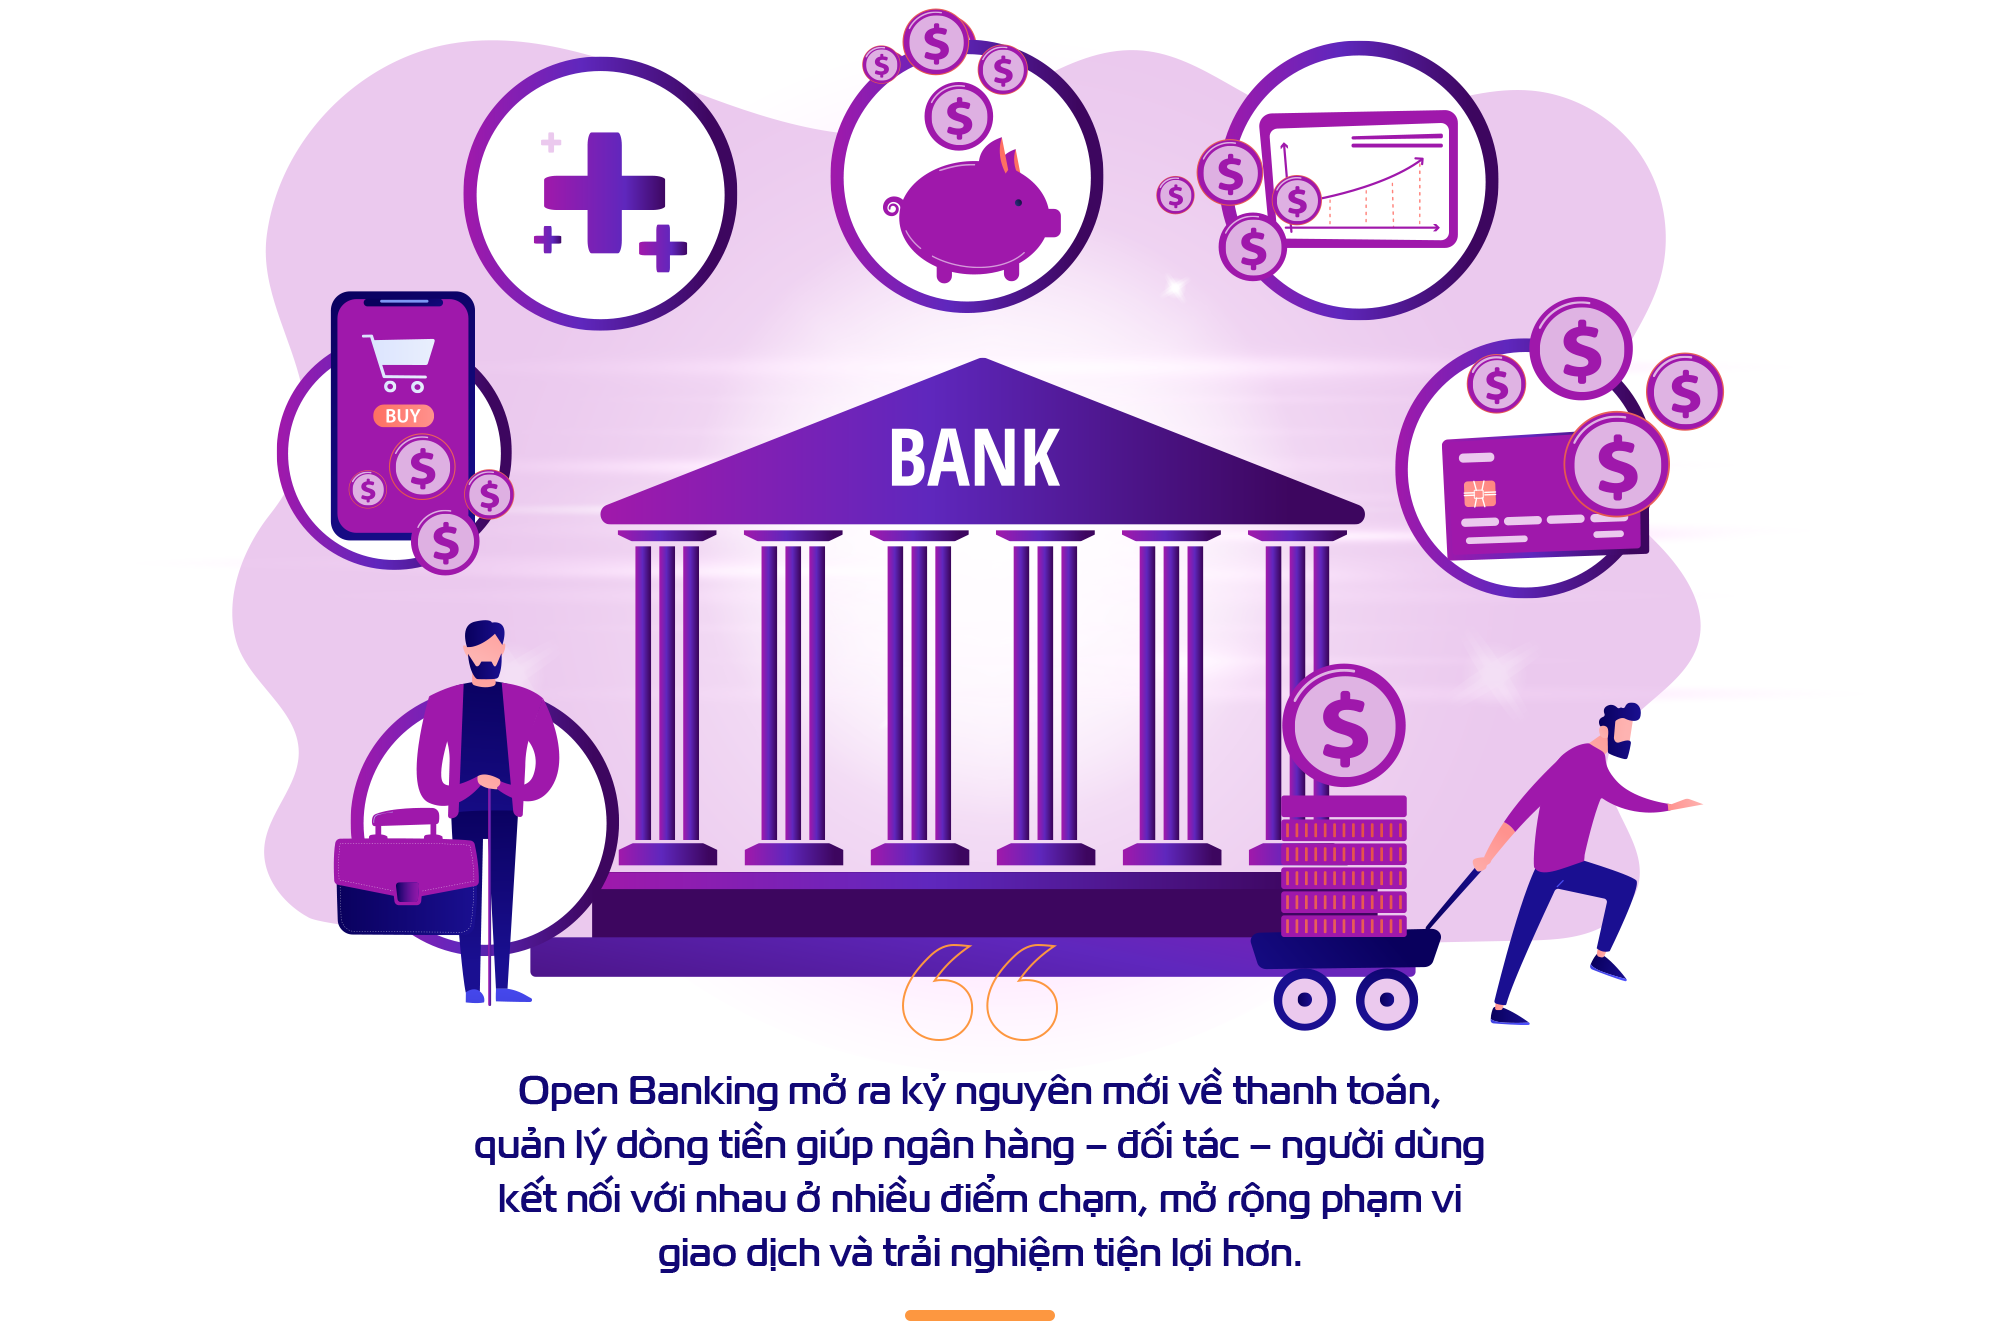 Cách ngân hàng Việt mở lối một ngân hàng chuẩn Open Banking - Ảnh 2.